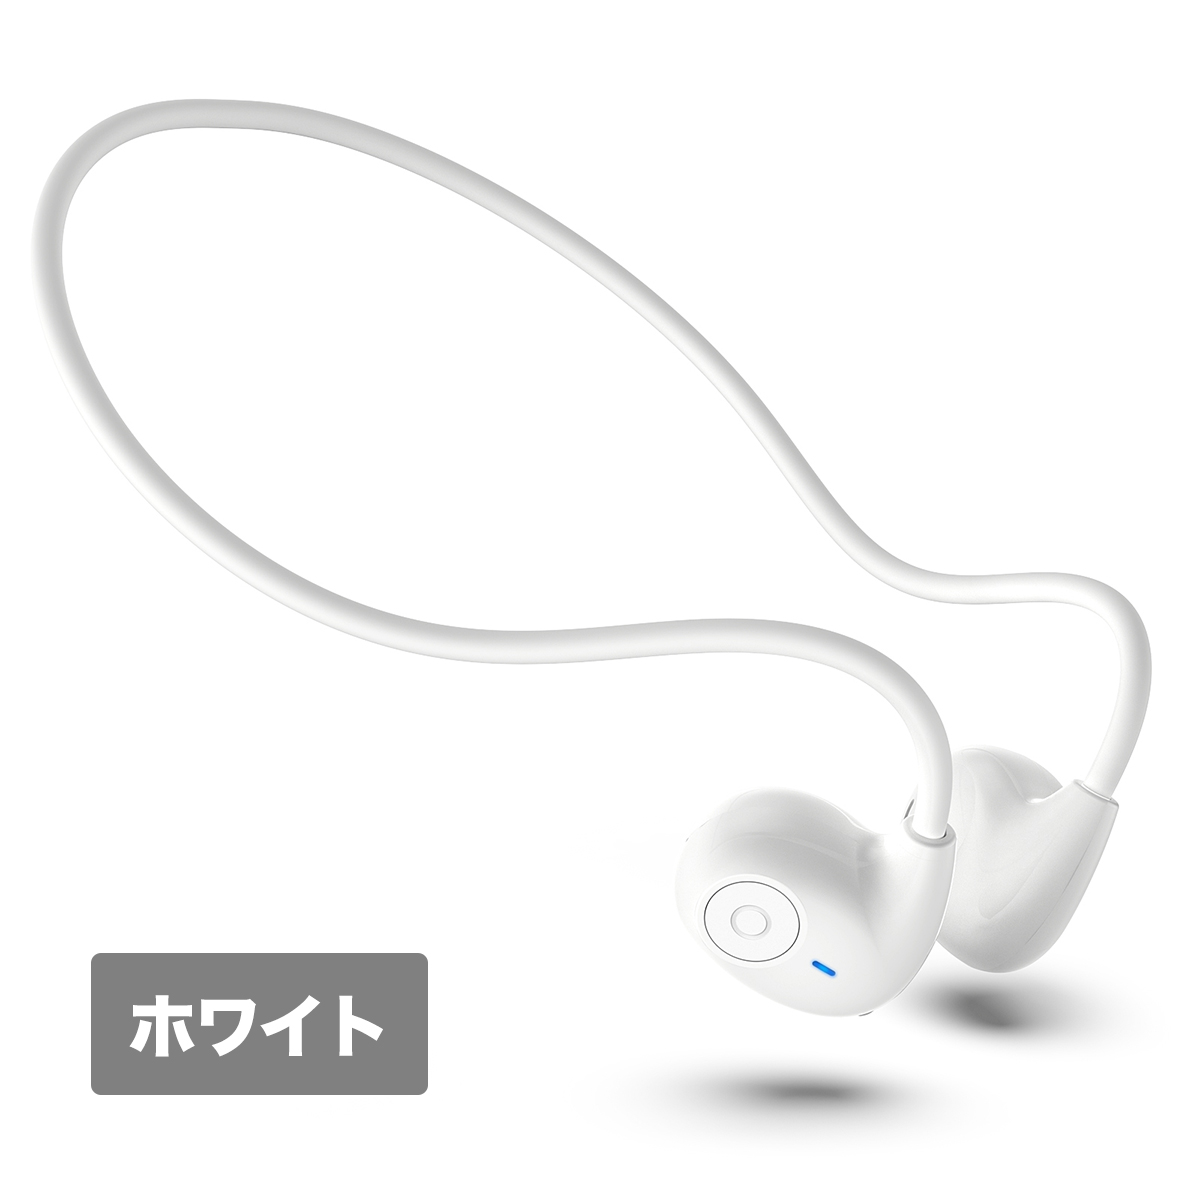 日本語音声案内 新発売 Bluetooth イヤホン 超軽量 空気伝導 ワイヤレスイヤホン blue...